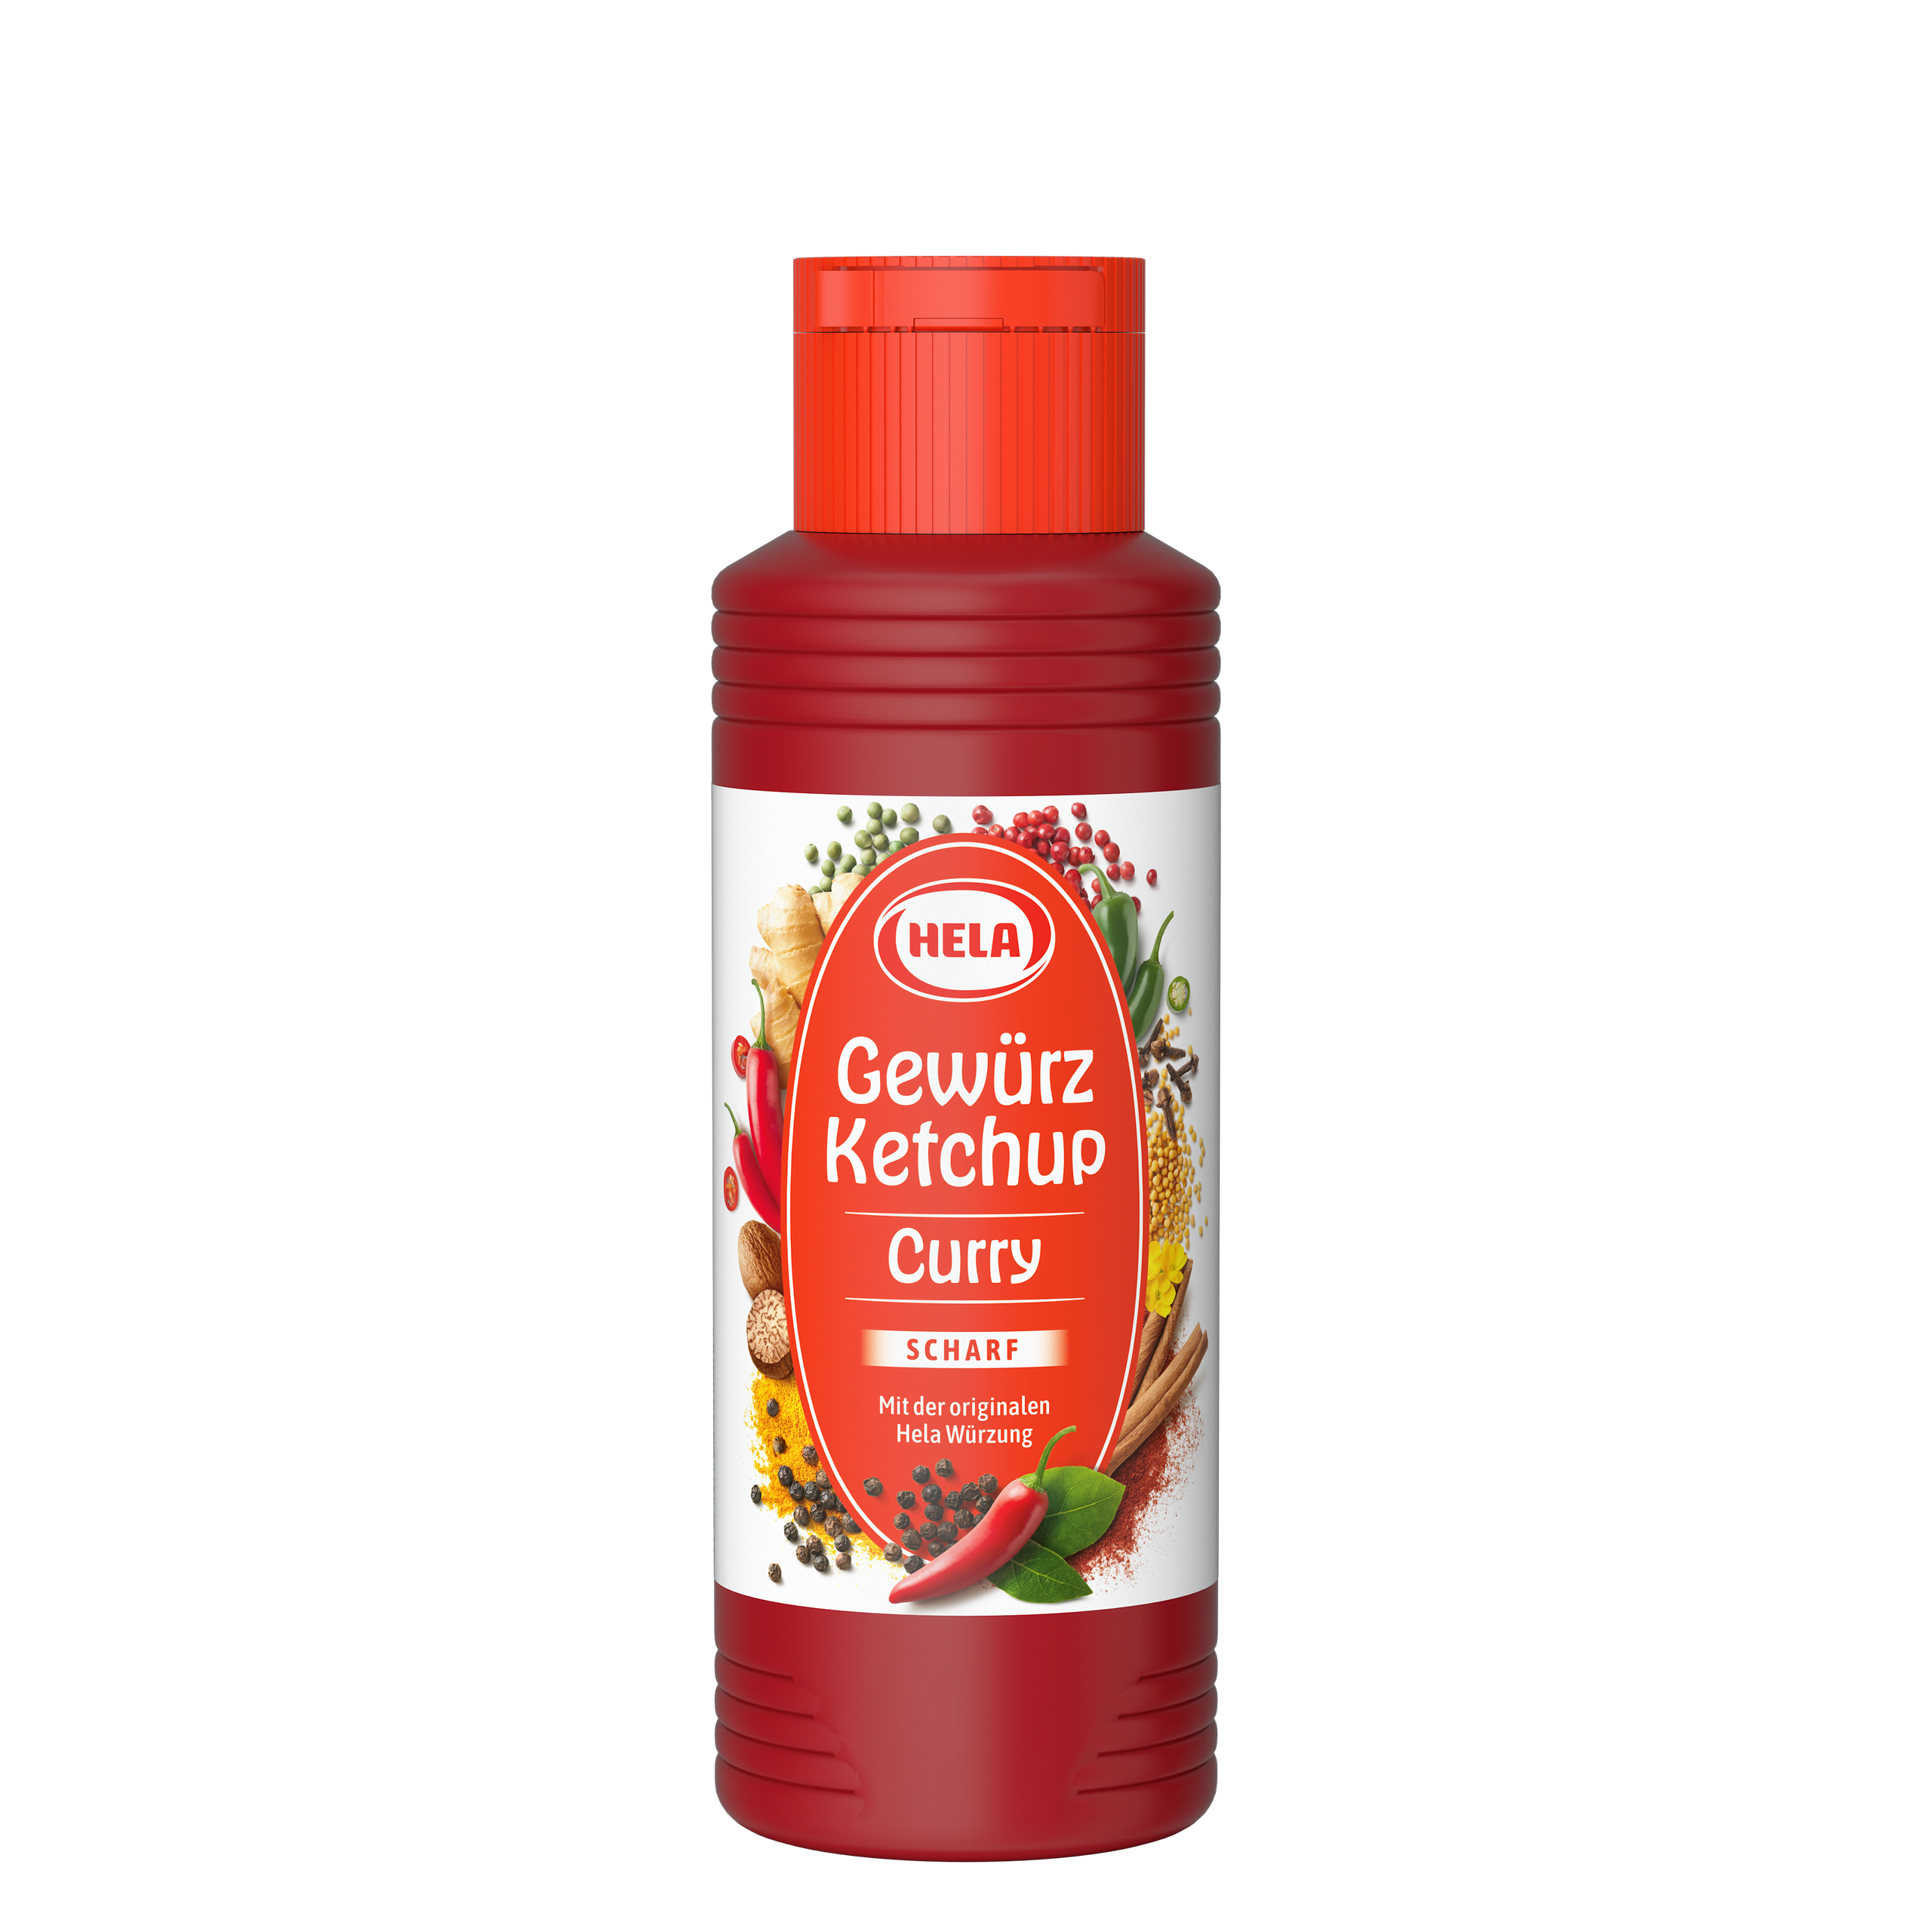 Gewürz Ketchup Curry scharf 300 ml